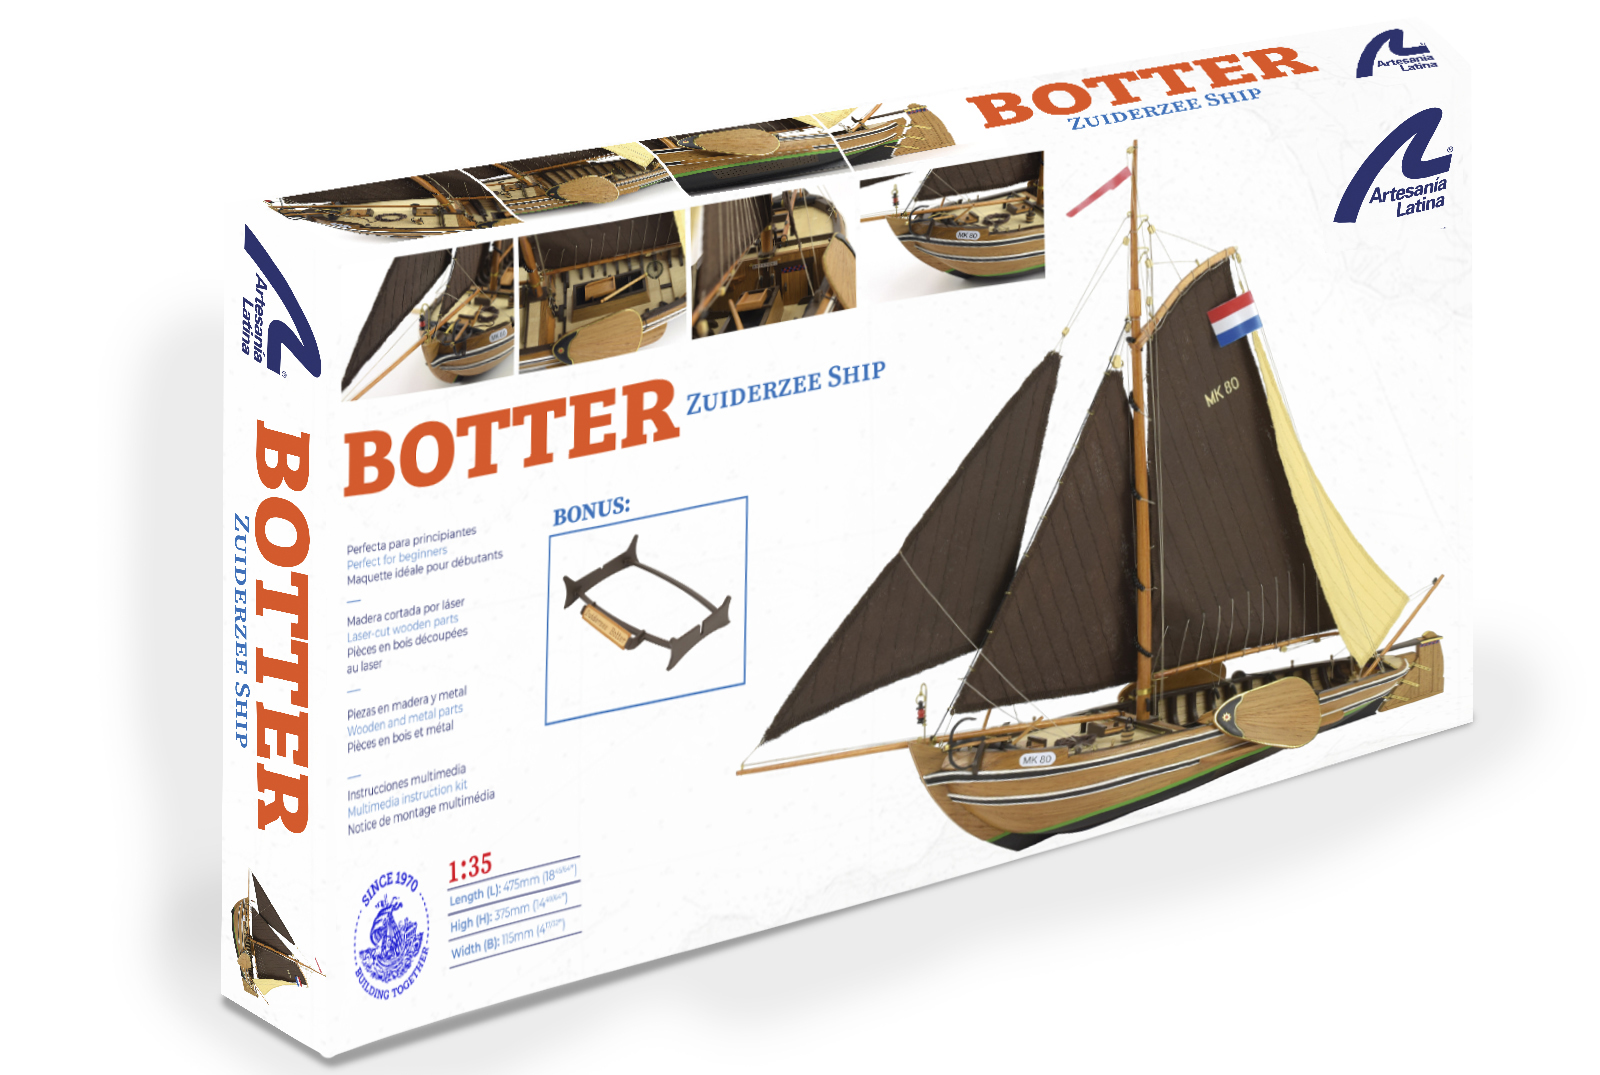 Maqueta Barco de Pesca Holandés Botter 1/35 (22125) de Artesanía Latina.